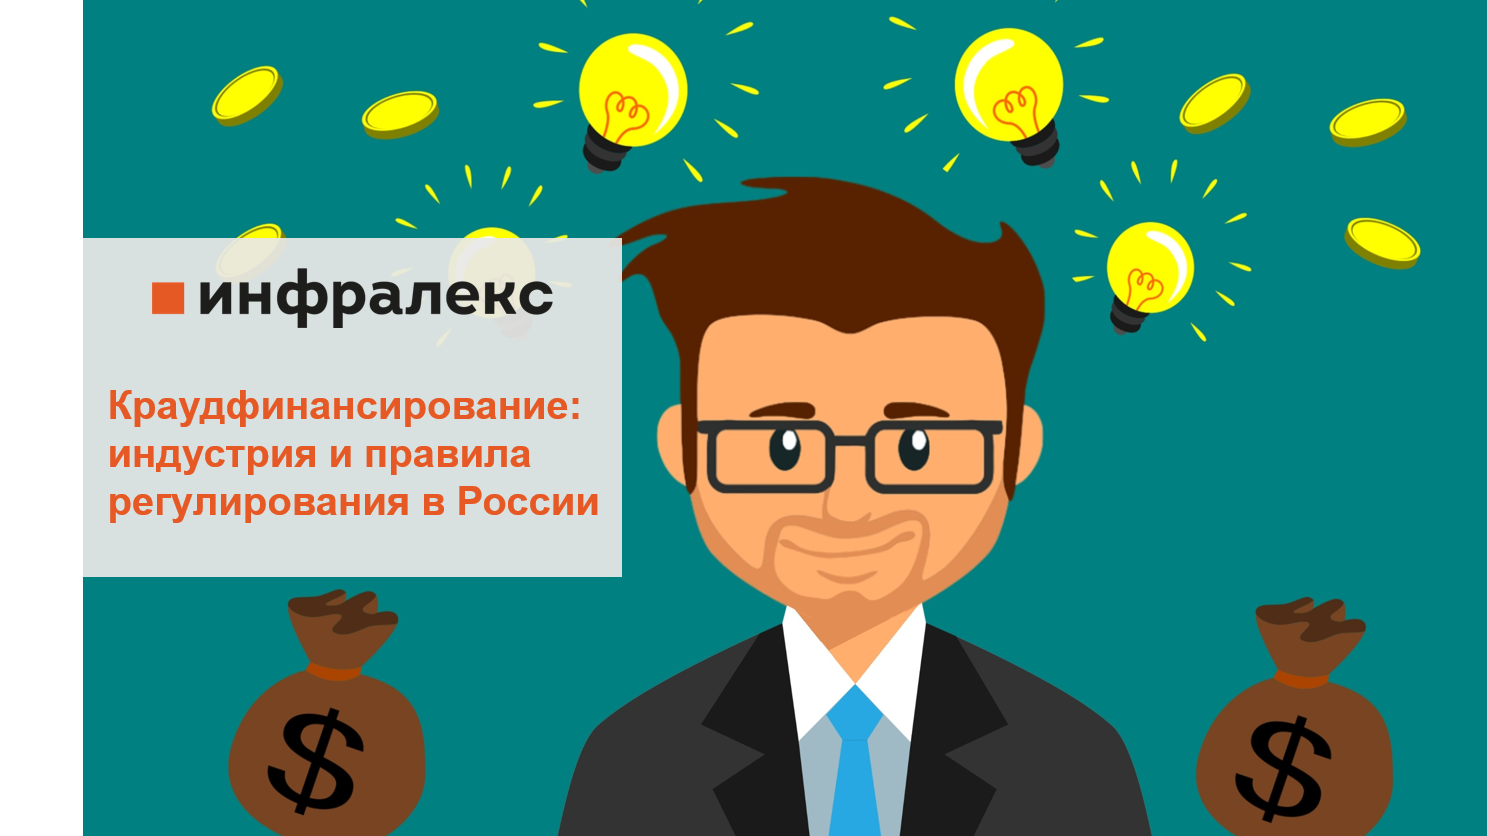 Краудфинансирование: индустрия и правила регулирования в России